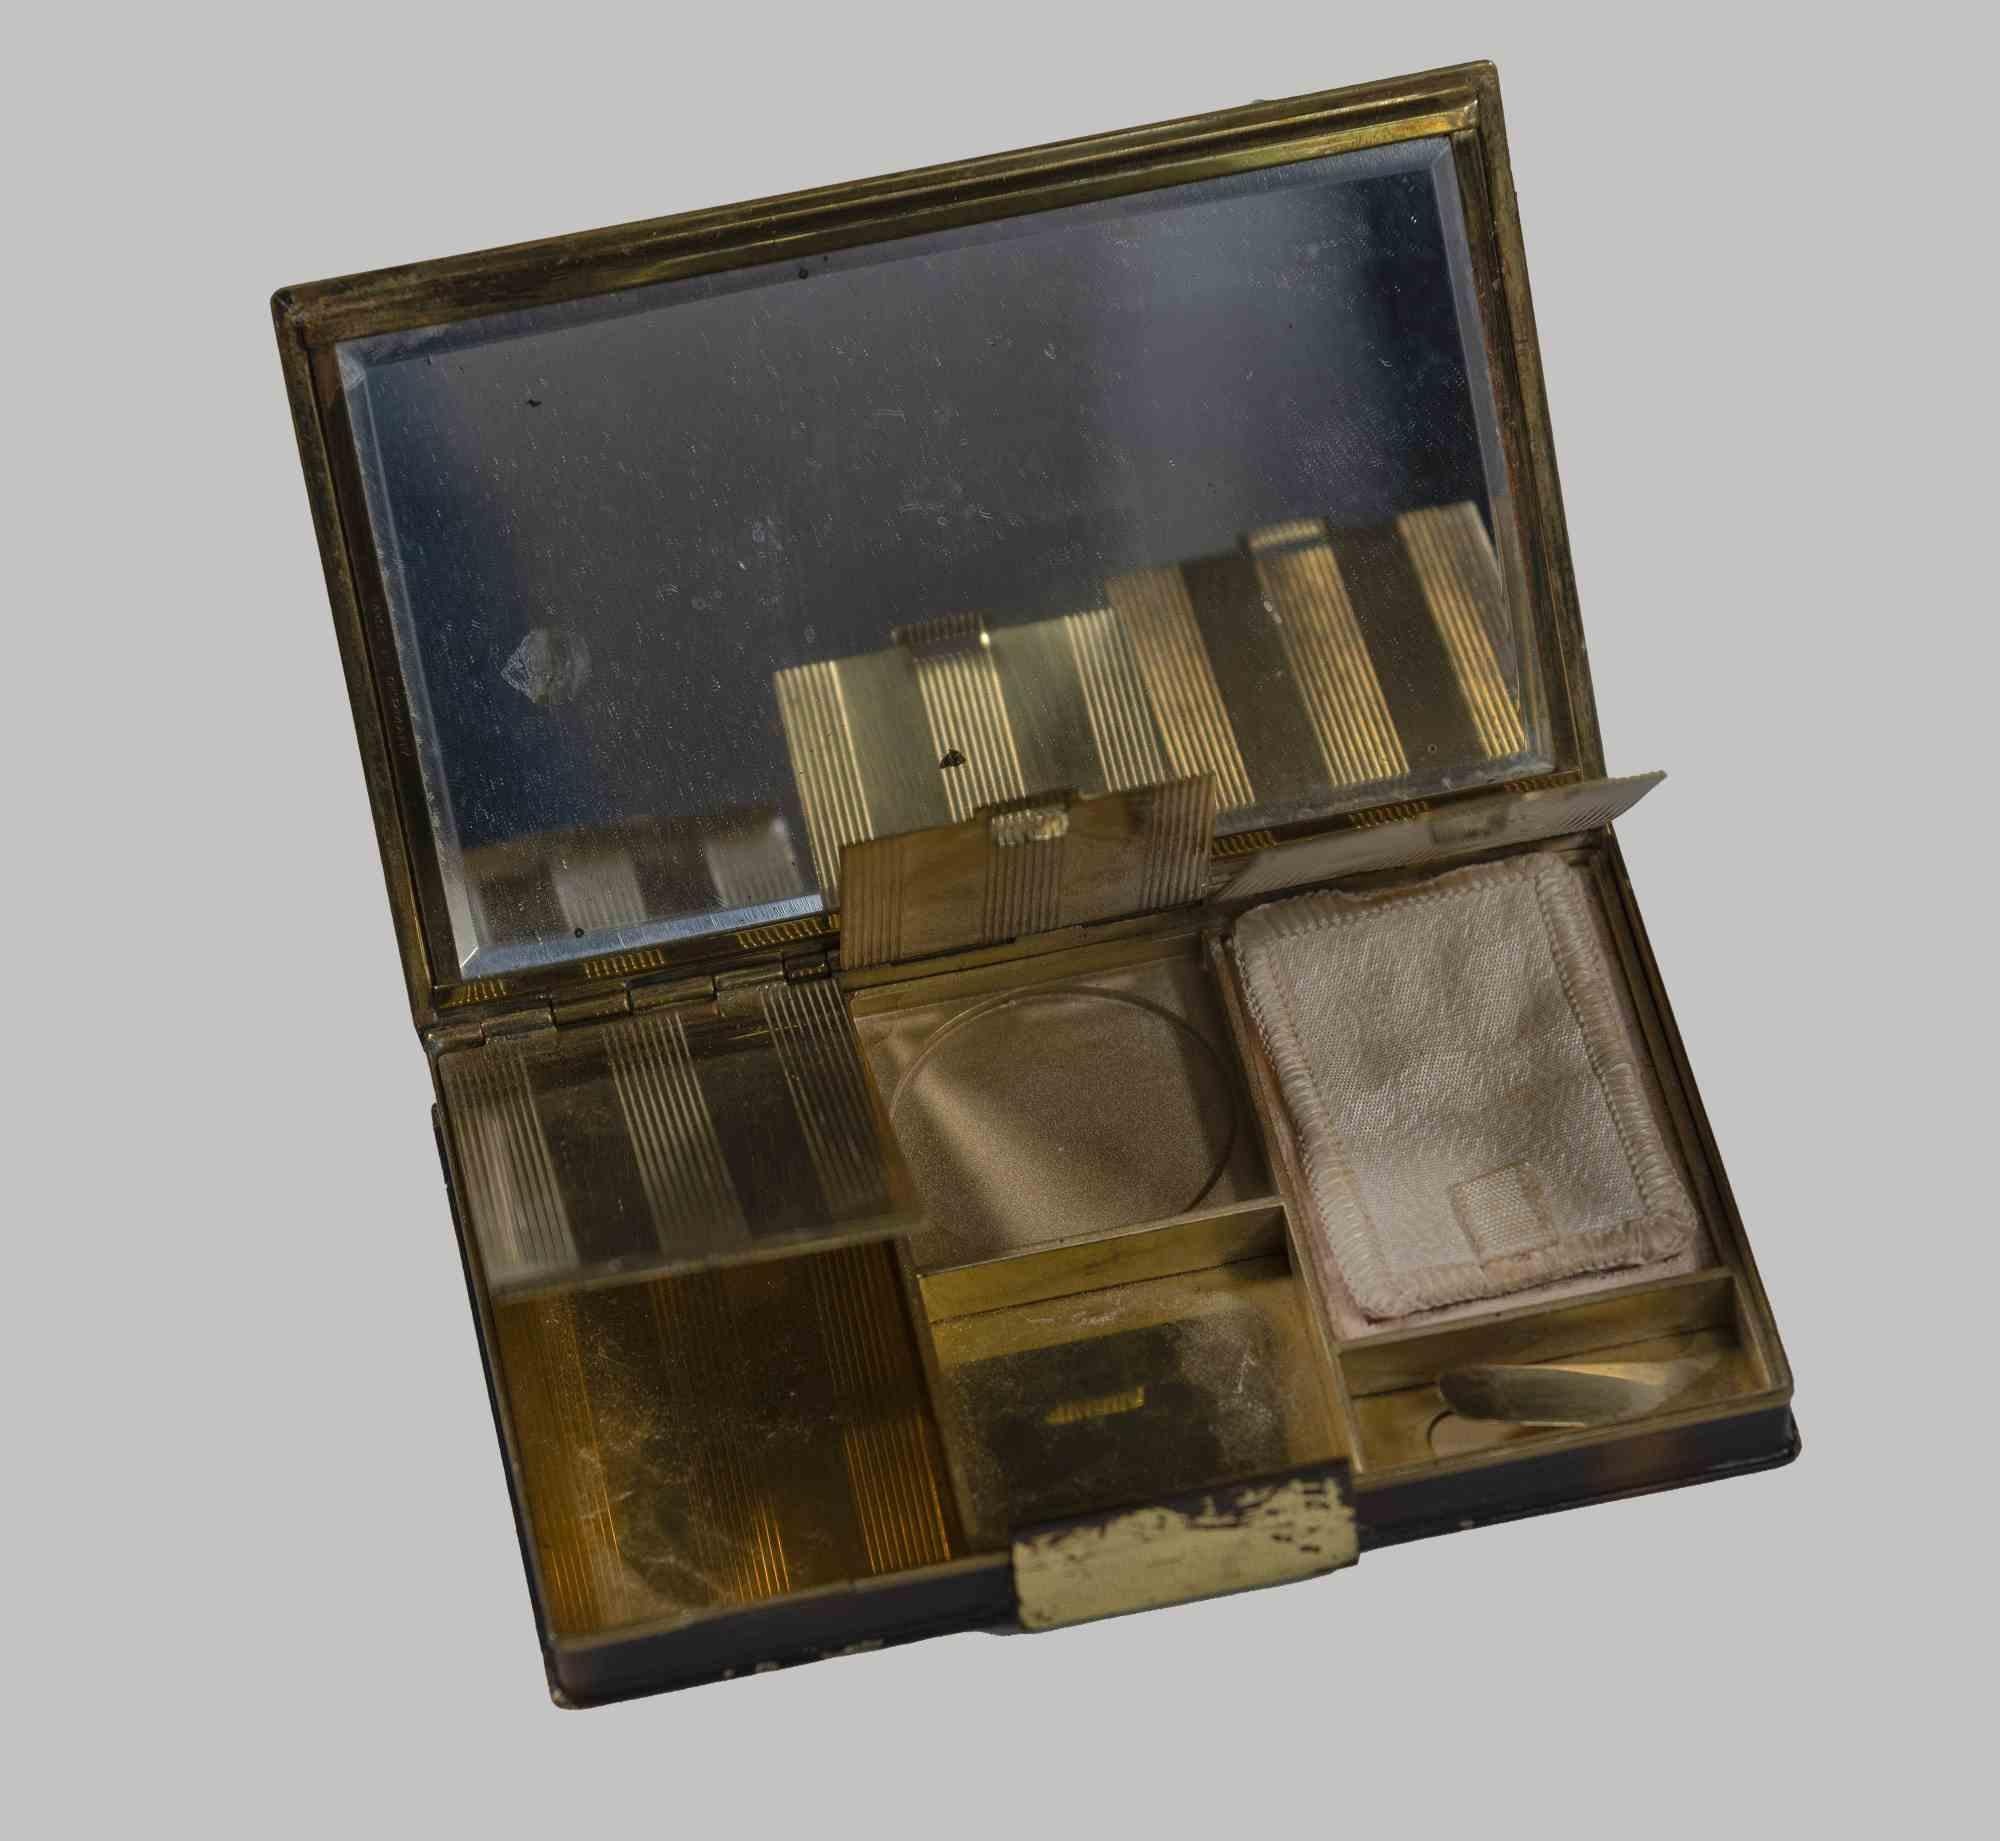 Trousse en bronze doré à décor de branches d'arbres. France 1930.

Couvercle avec base en écaille. A l'intérieur, trois compartiments pour le maquillage.

Bonnes conditions.

 